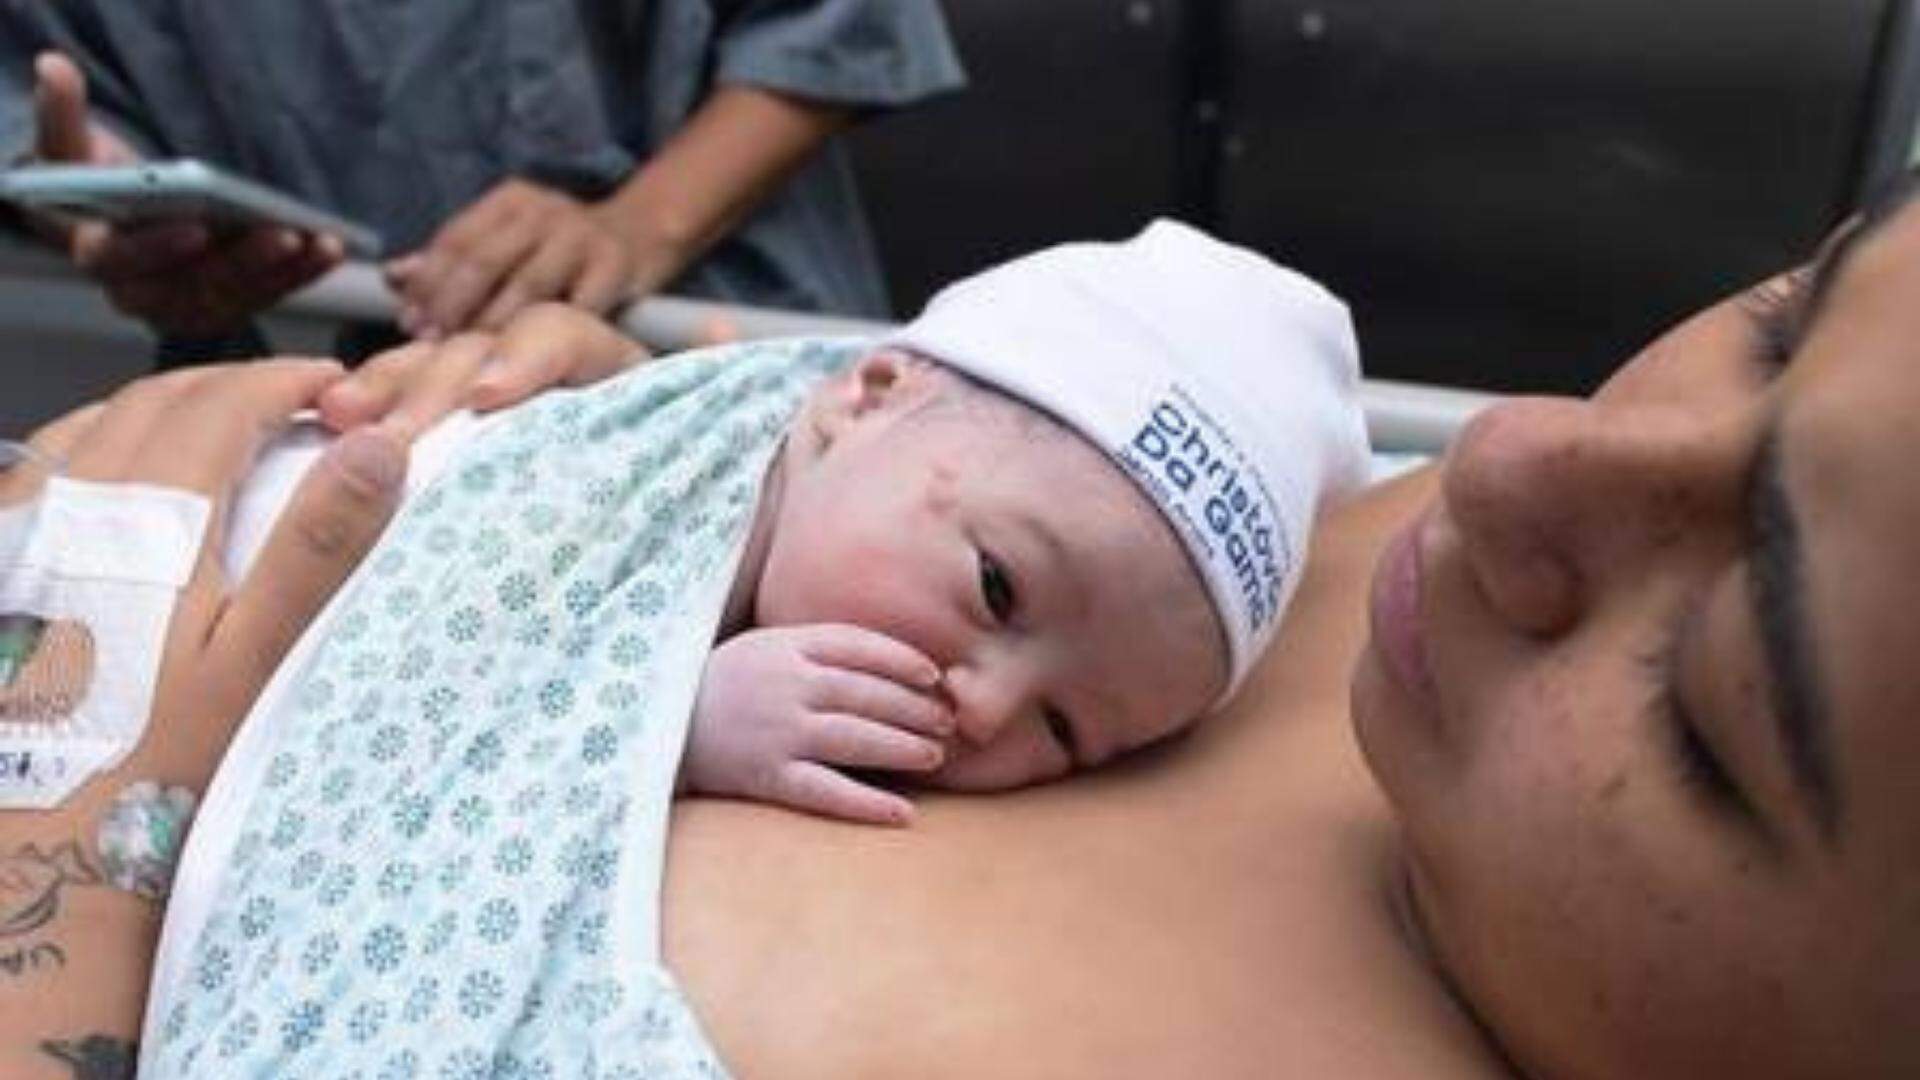 Mc Loma divulga vídeo inédito do nascimento da filha e fãs reagem: “Momento único da vida” - Metropolitana FM